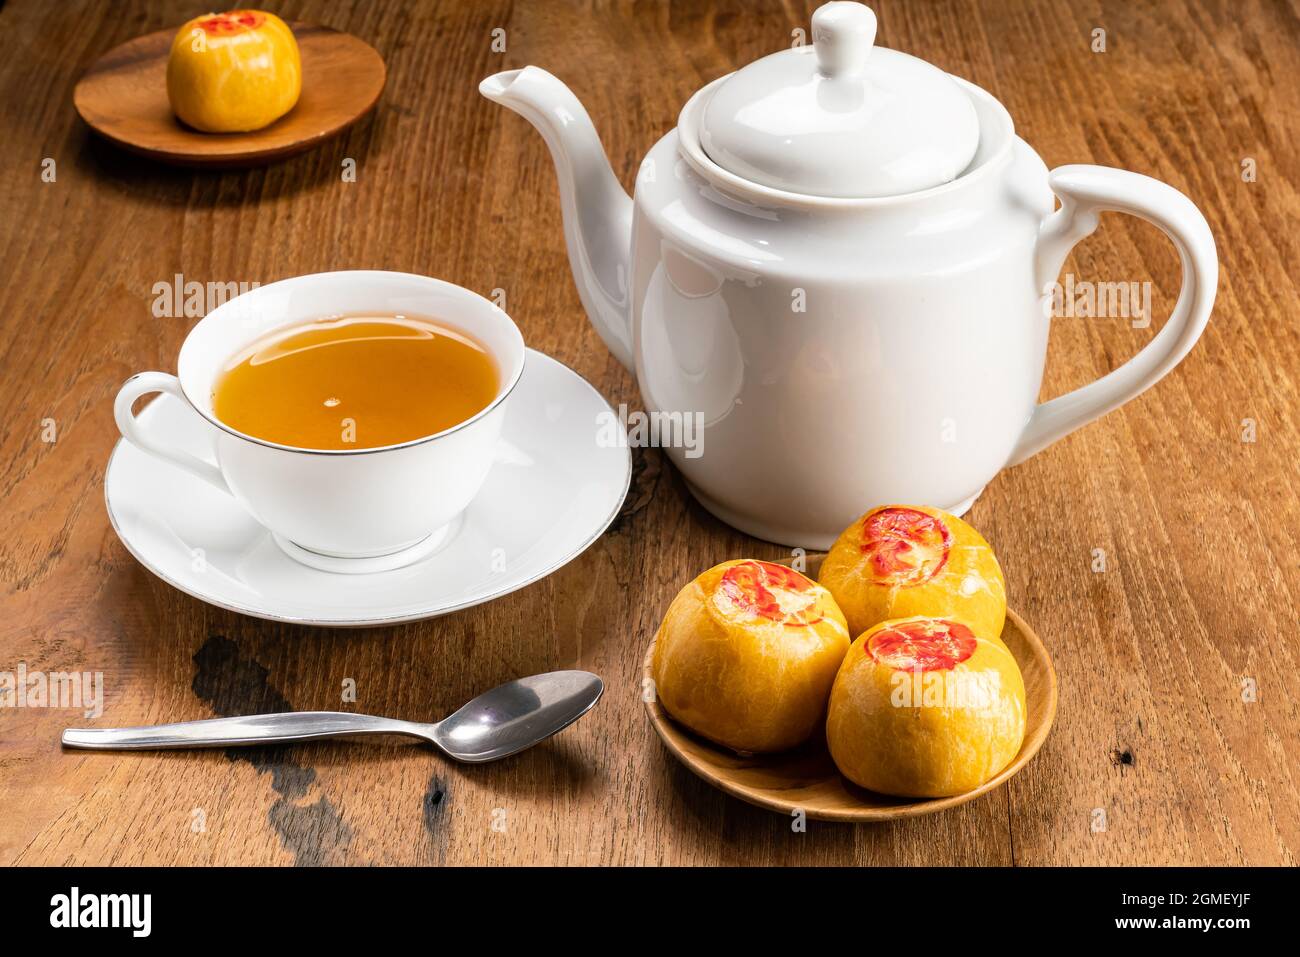 Blick auf süßes chinesisches Gebäck oder Mondkuchen, gefüllt mit süßer Mungbohnenpaste und einer weißen Tasse heißen Tees aus Keramik mit Wasserkocher und Metalllöffel auf Holz-T Stockfoto